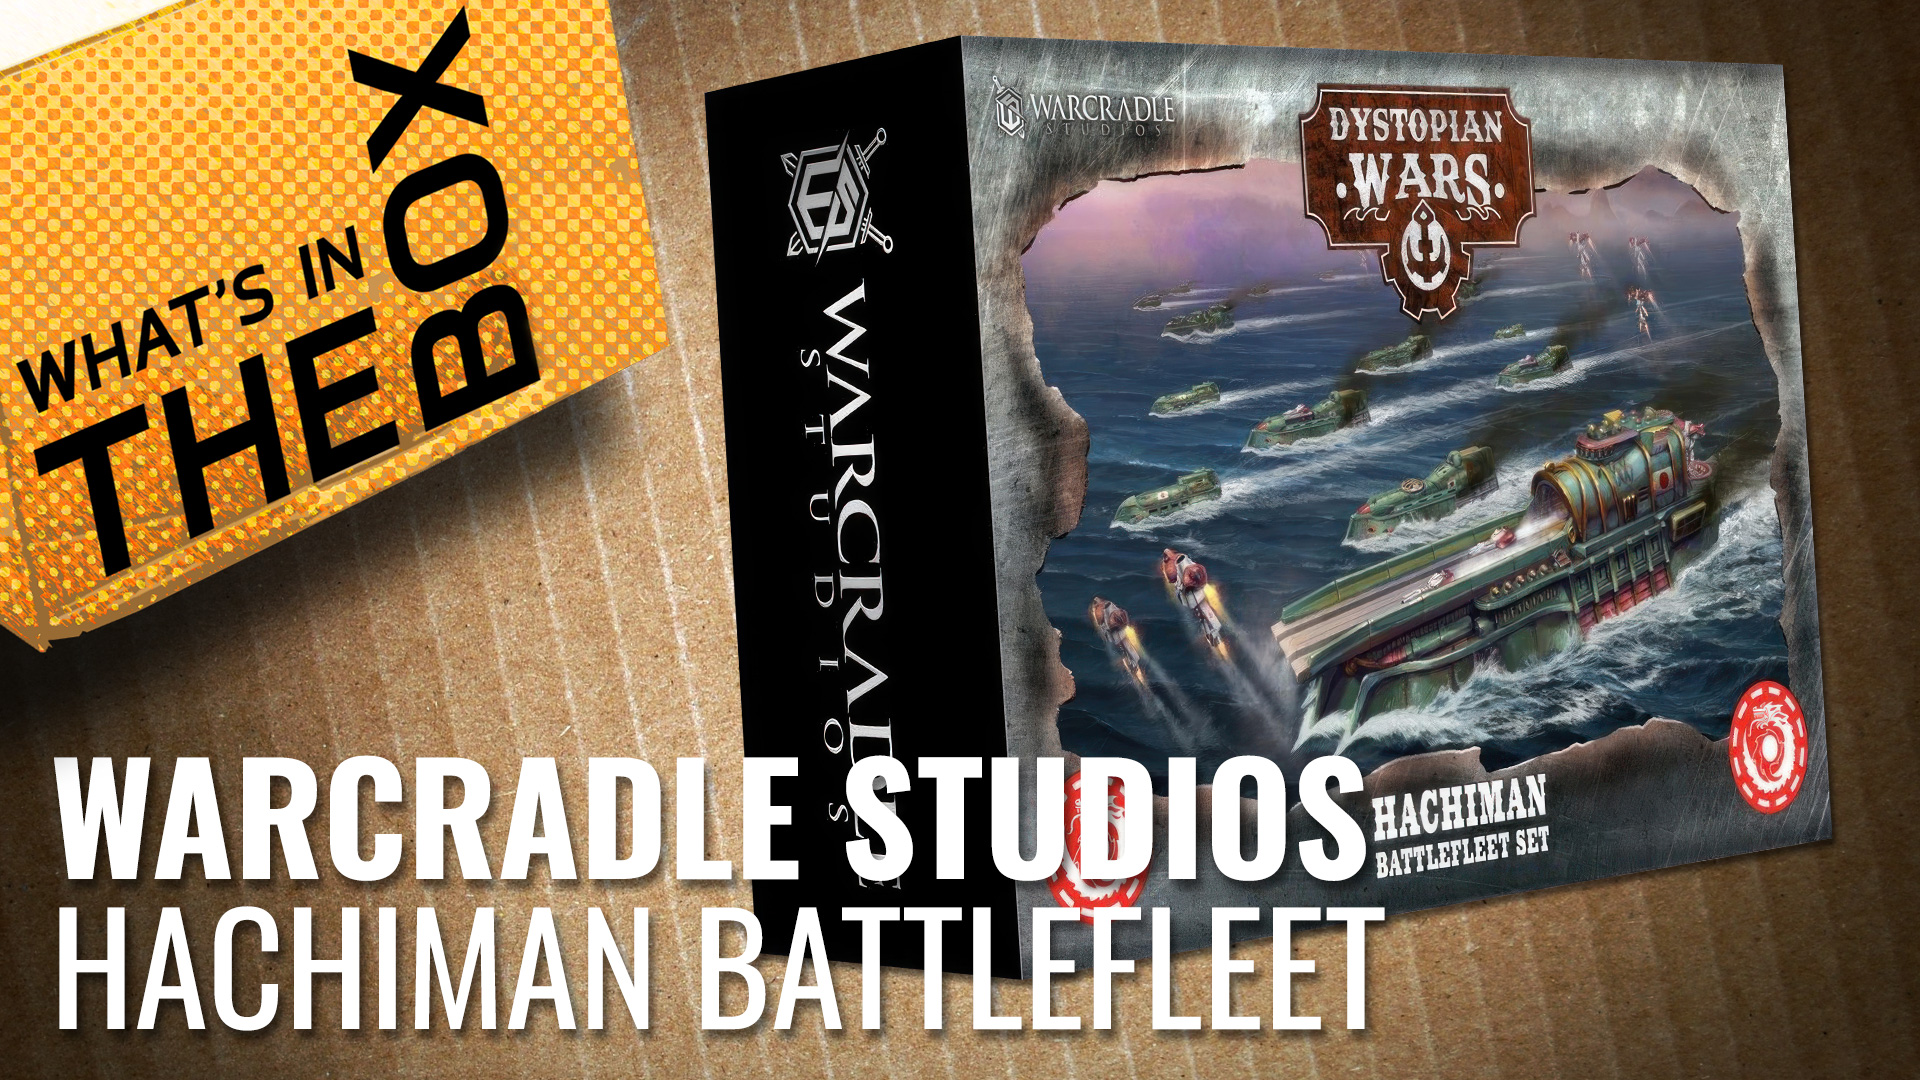 Ontabletop-unboxing-warcradle-studios-hachiman-battlefleet-coverimage